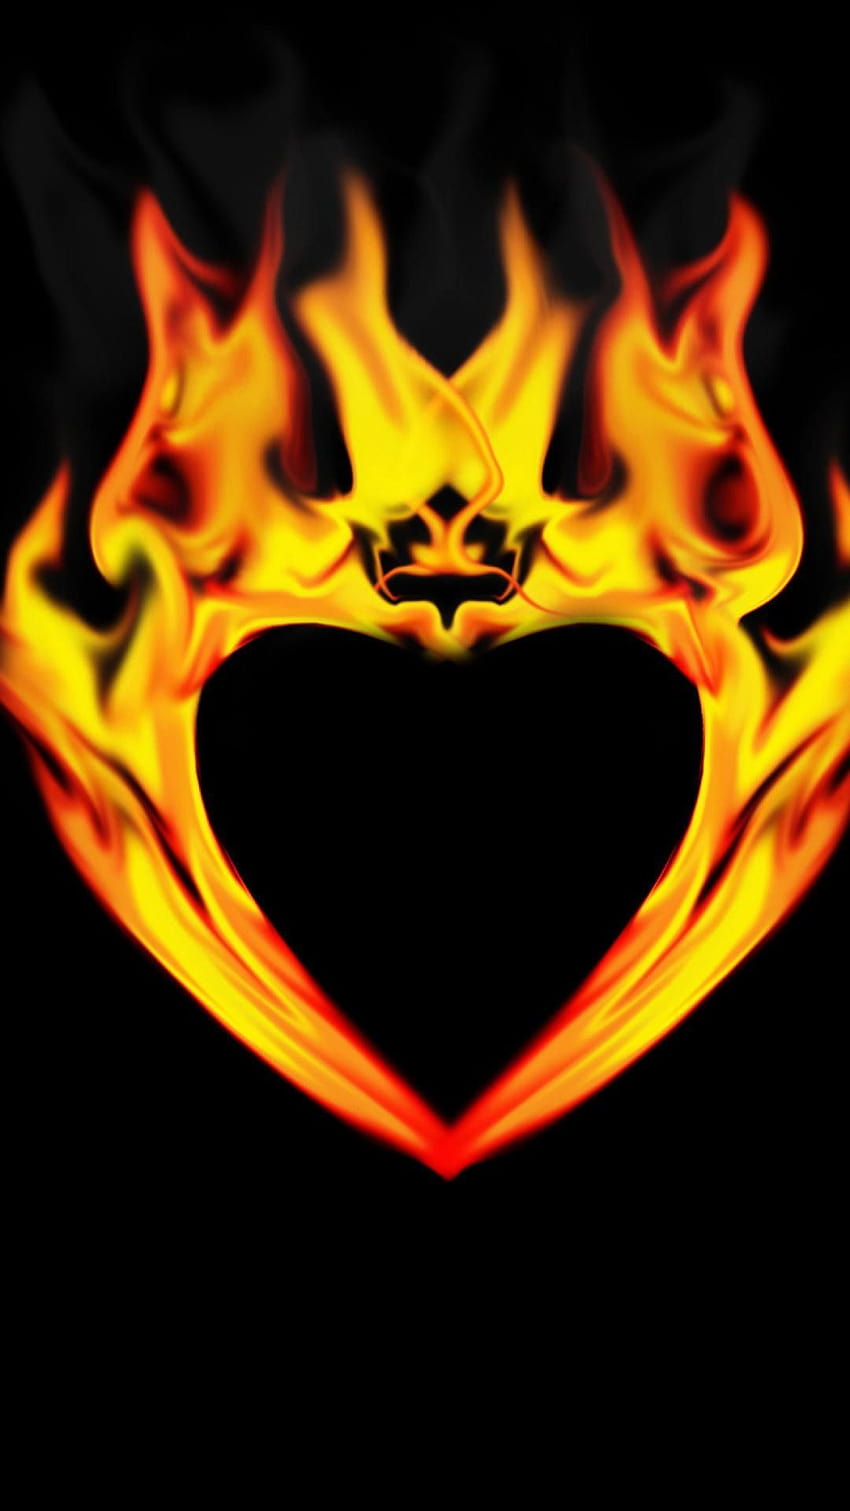 iphone , Heart , Fire ...pinterest, flaming hearts HD phone wallpaper